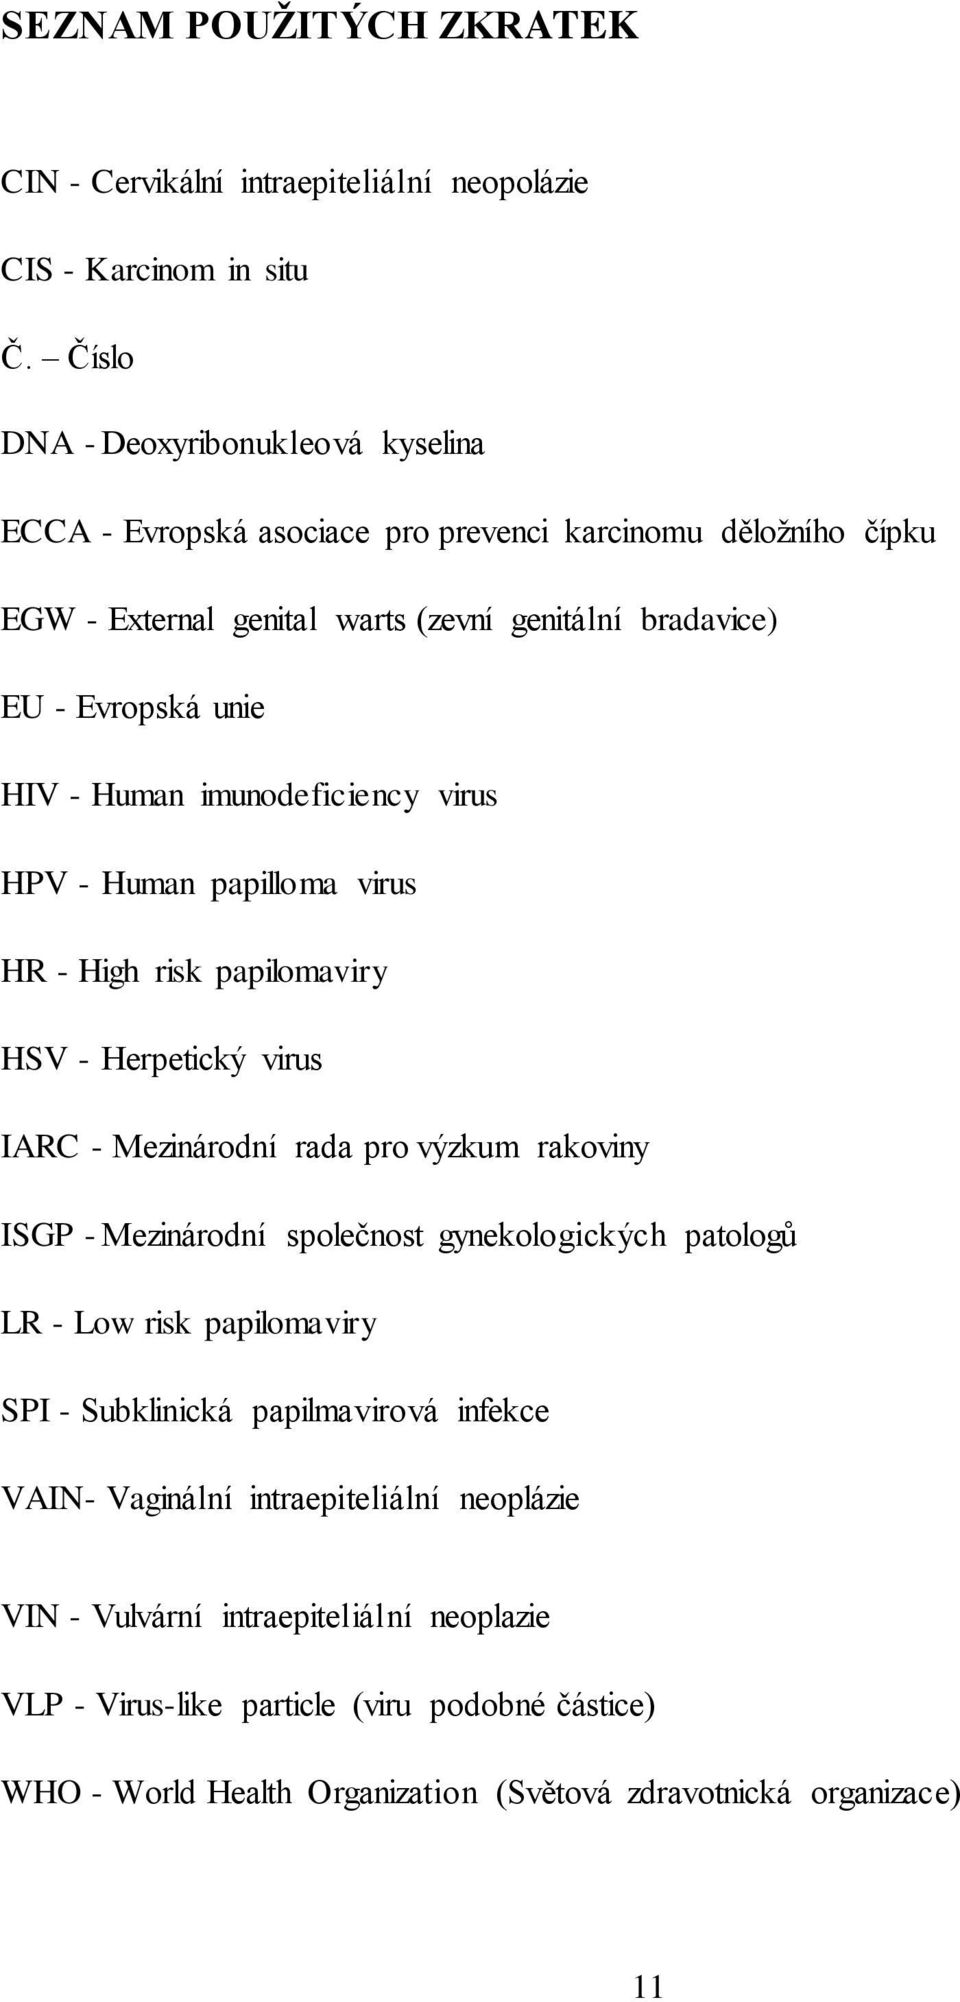 Human imunodeficiency virus HPV - Human papilloma virus HR - High risk papilomaviry HSV - Herpetický virus IARC - Mezinárodní rada pro výzkum rakoviny ISGP - Mezinárodní společnost